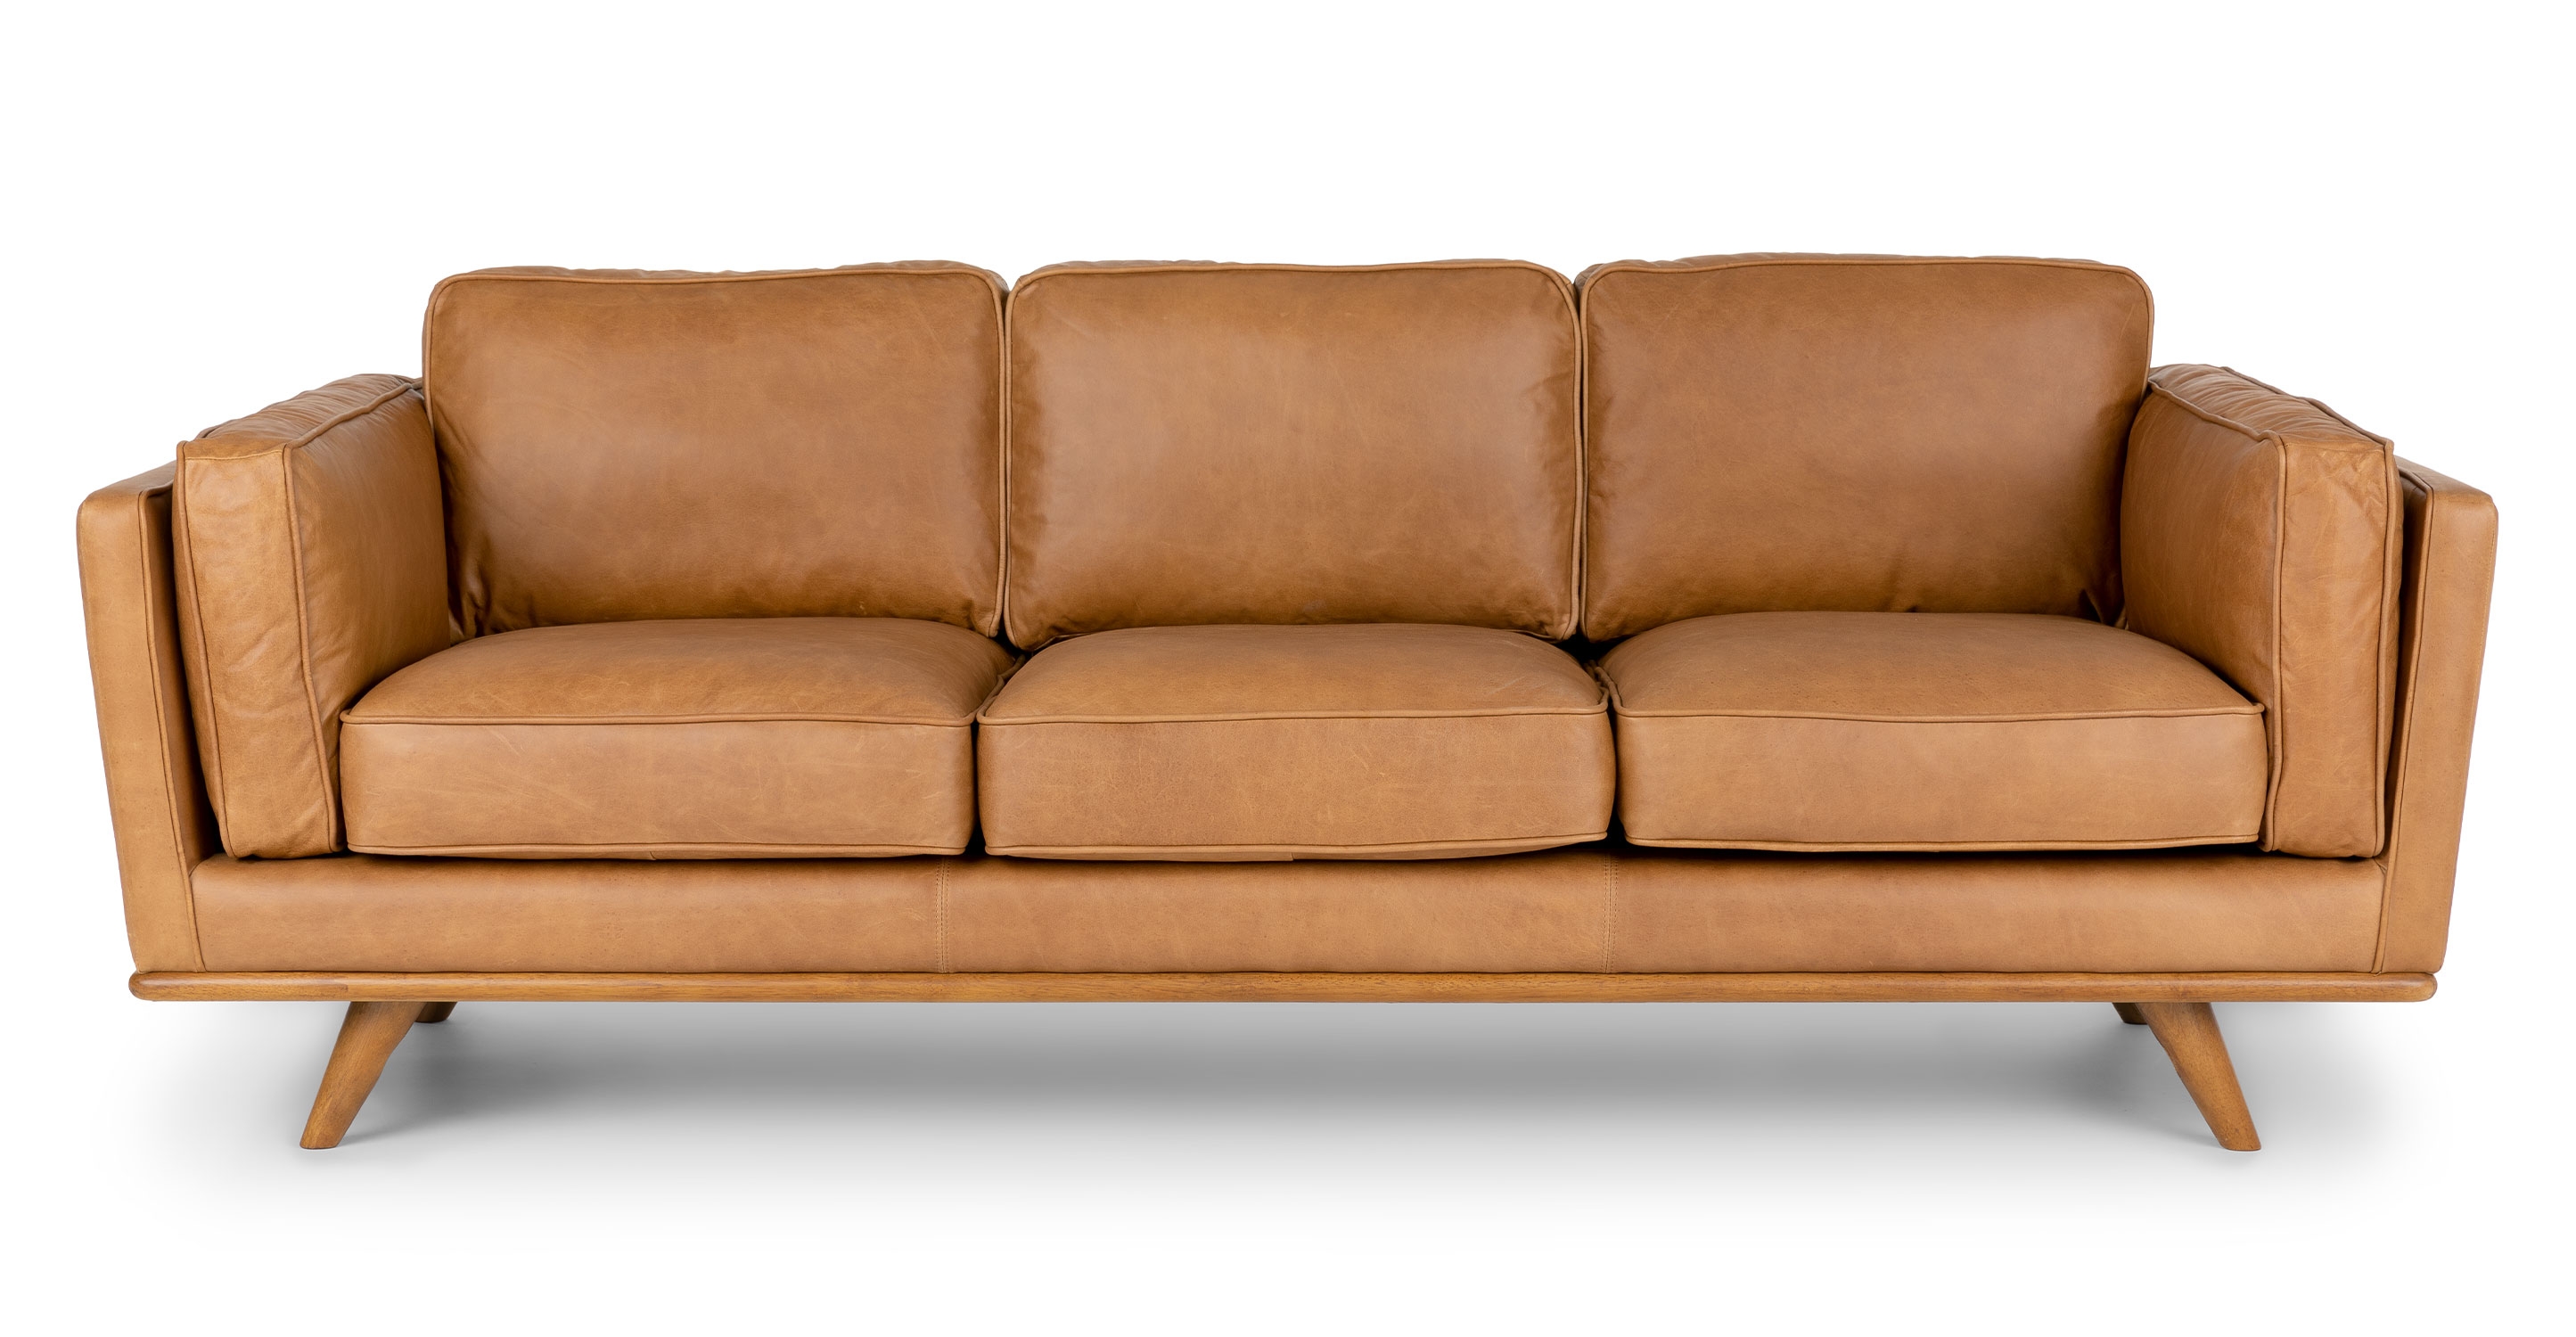 Timber Sofa, Charme Tan - Image 5